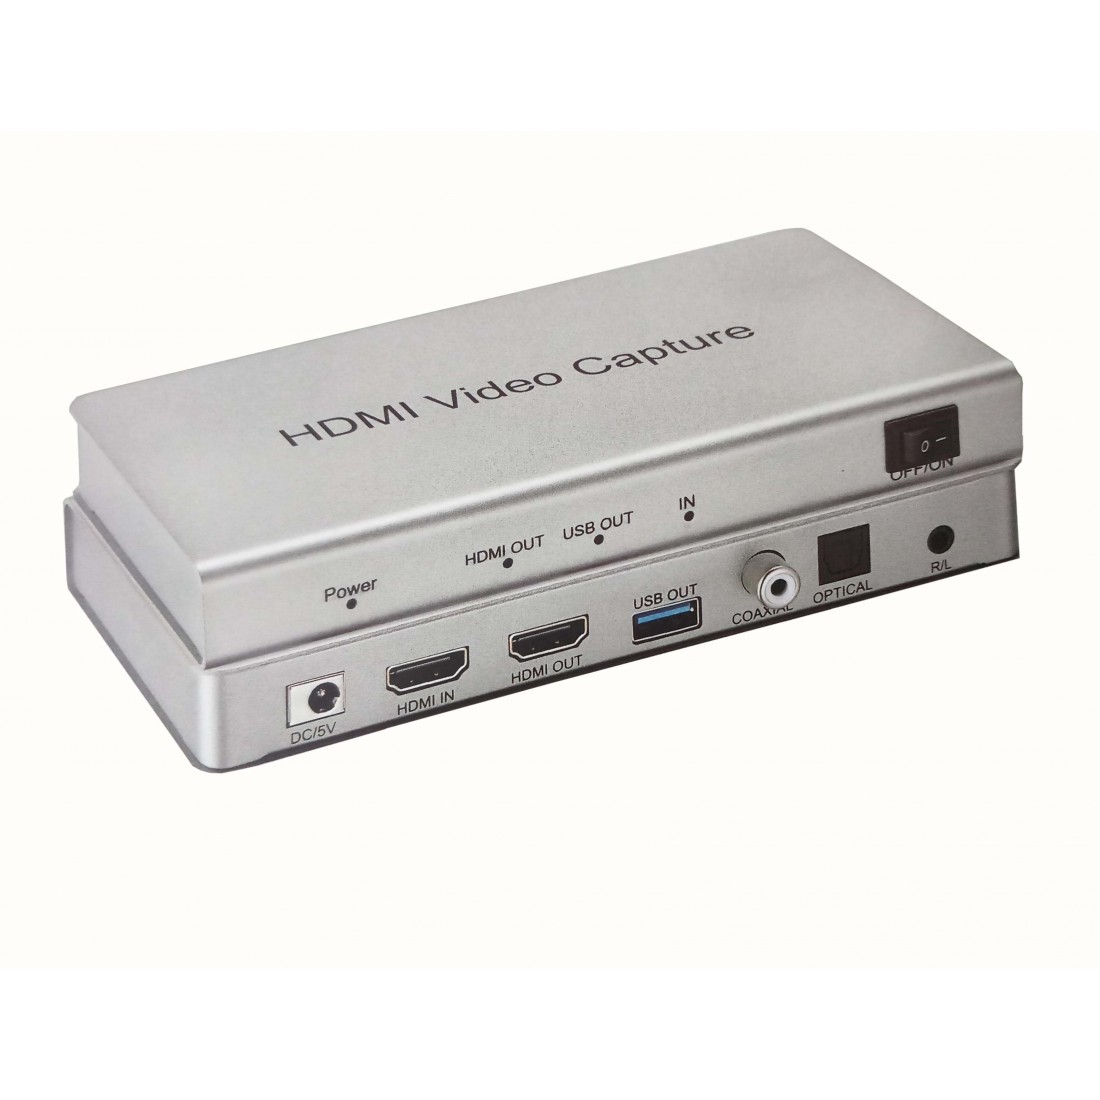 USB 3.0 HDMI video capture